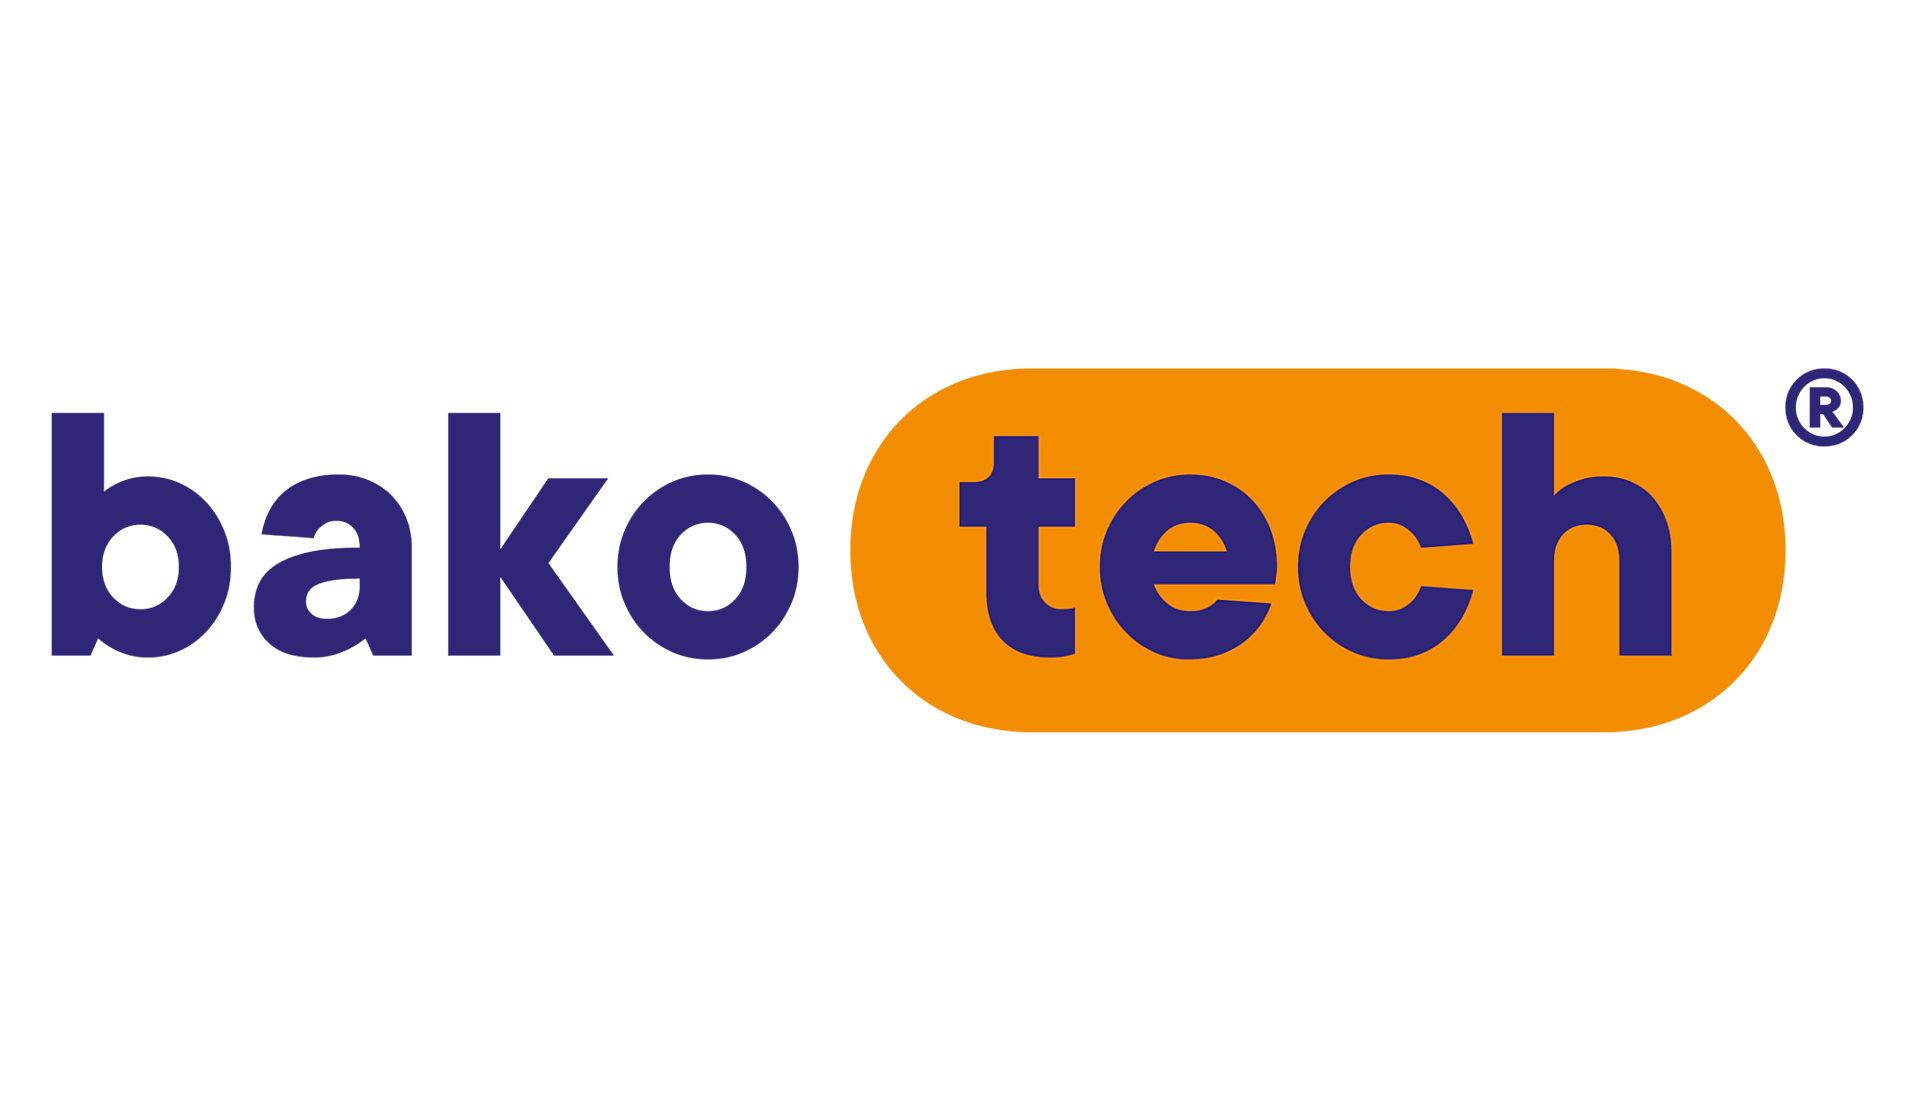 Bakotech new logo